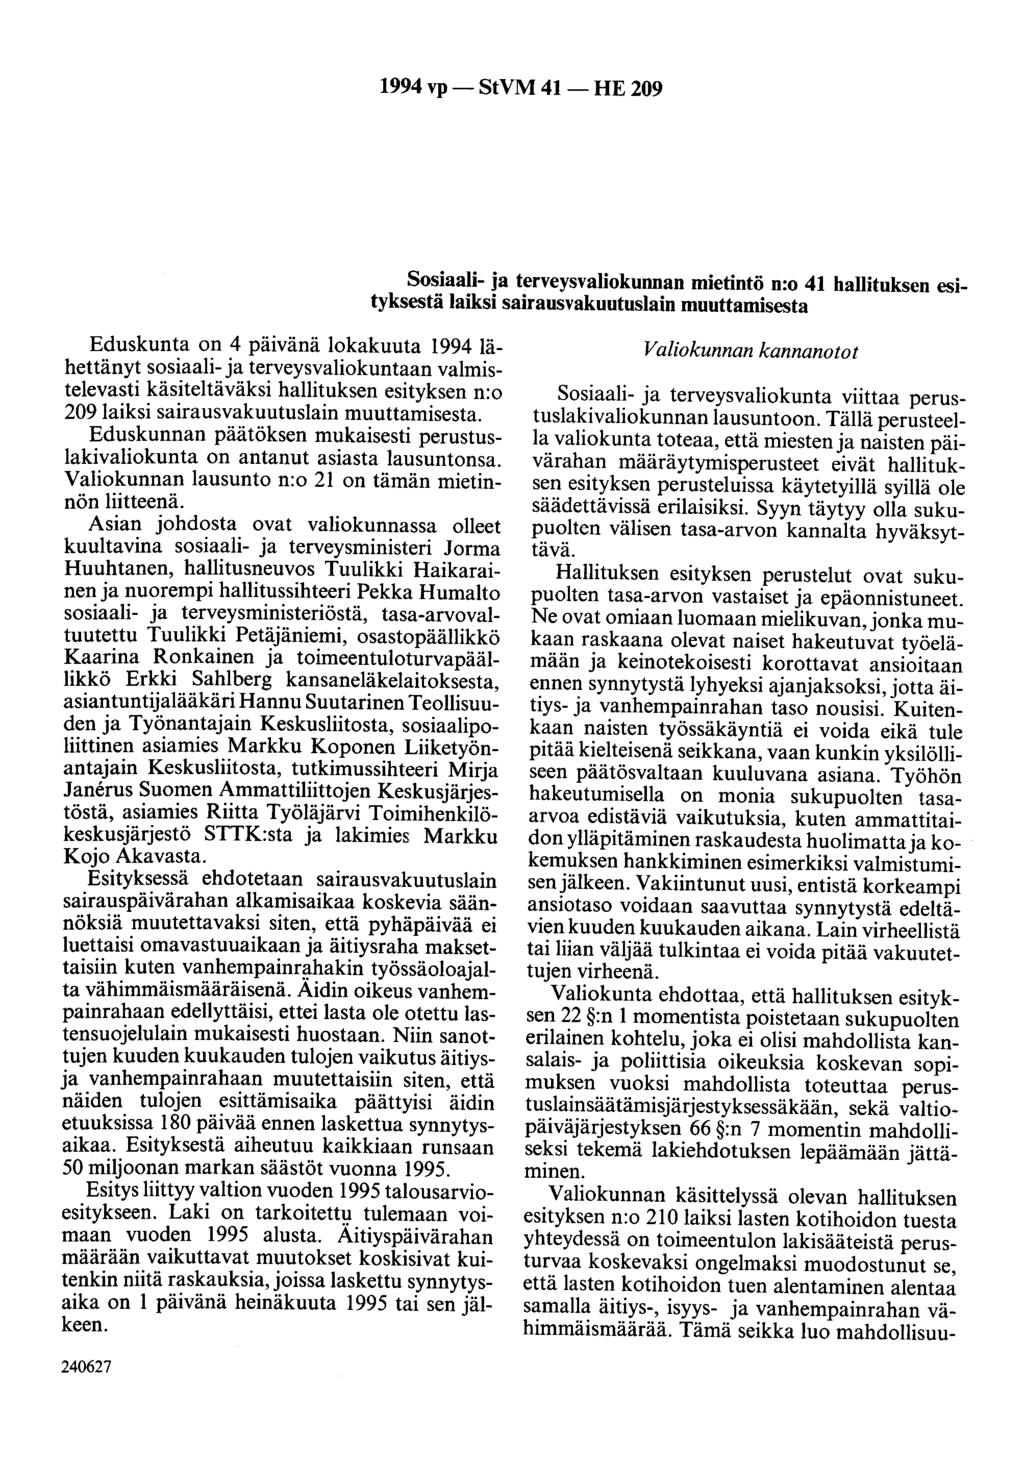 1994 vp- StVM 41- HE 209 Sosiaali- ja terveysvaliokunnan mietintö n:o 41 hallituksen esityksestä laiksi sairausvakuutuslain muuttamisesta Eduskunta on 4 päivänä lokakuuta 1994 lähettänyt sosiaali- ja